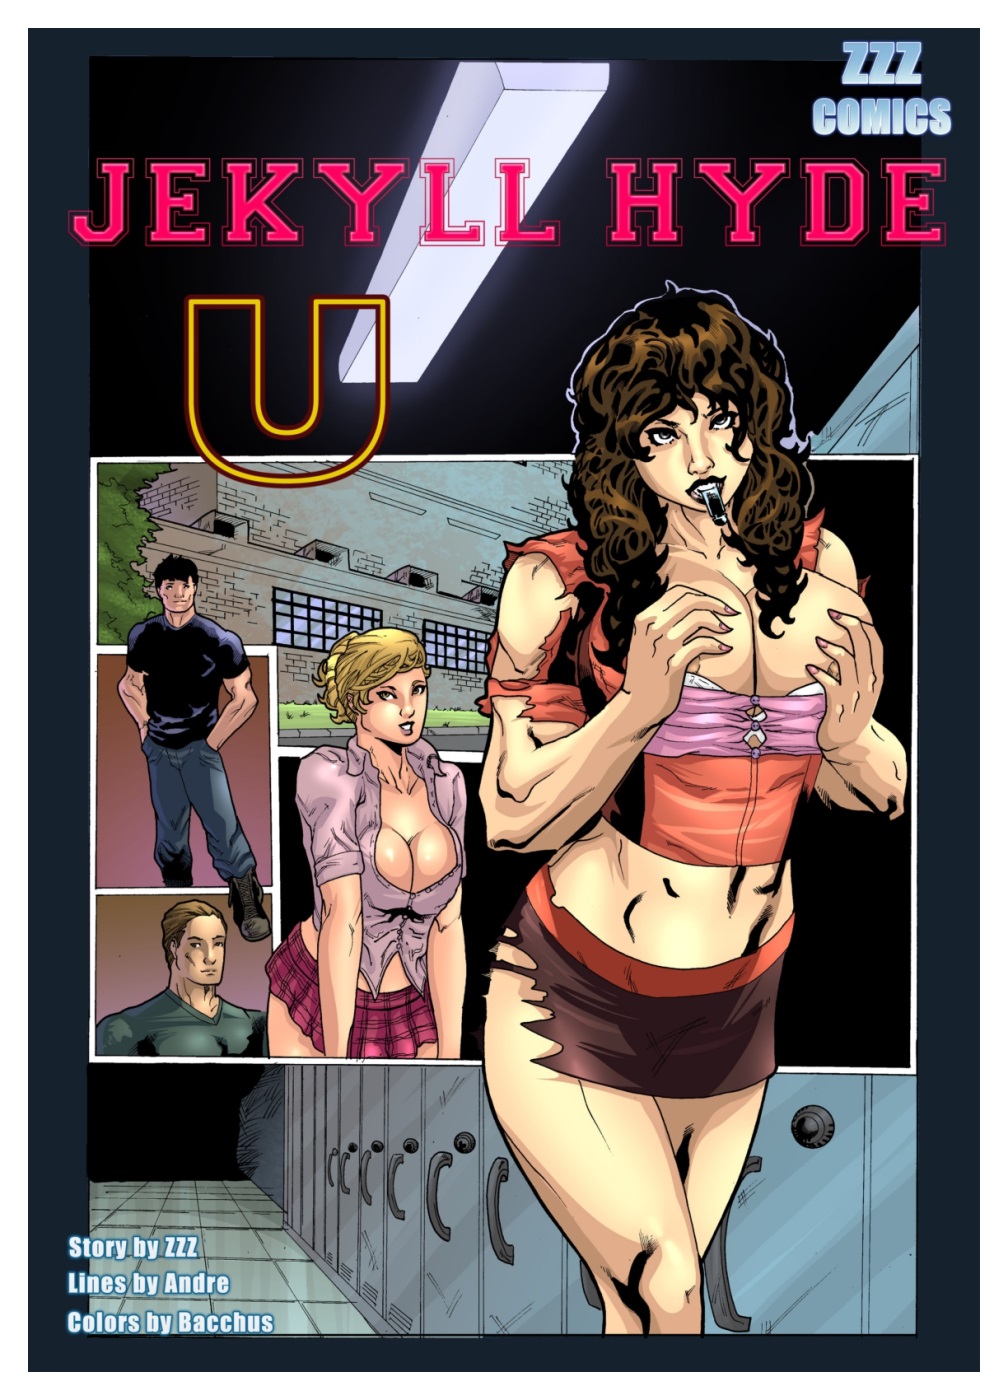 Porn Comics - ZZZ- Jekyll Hyde U Part I porn comics 8 muses